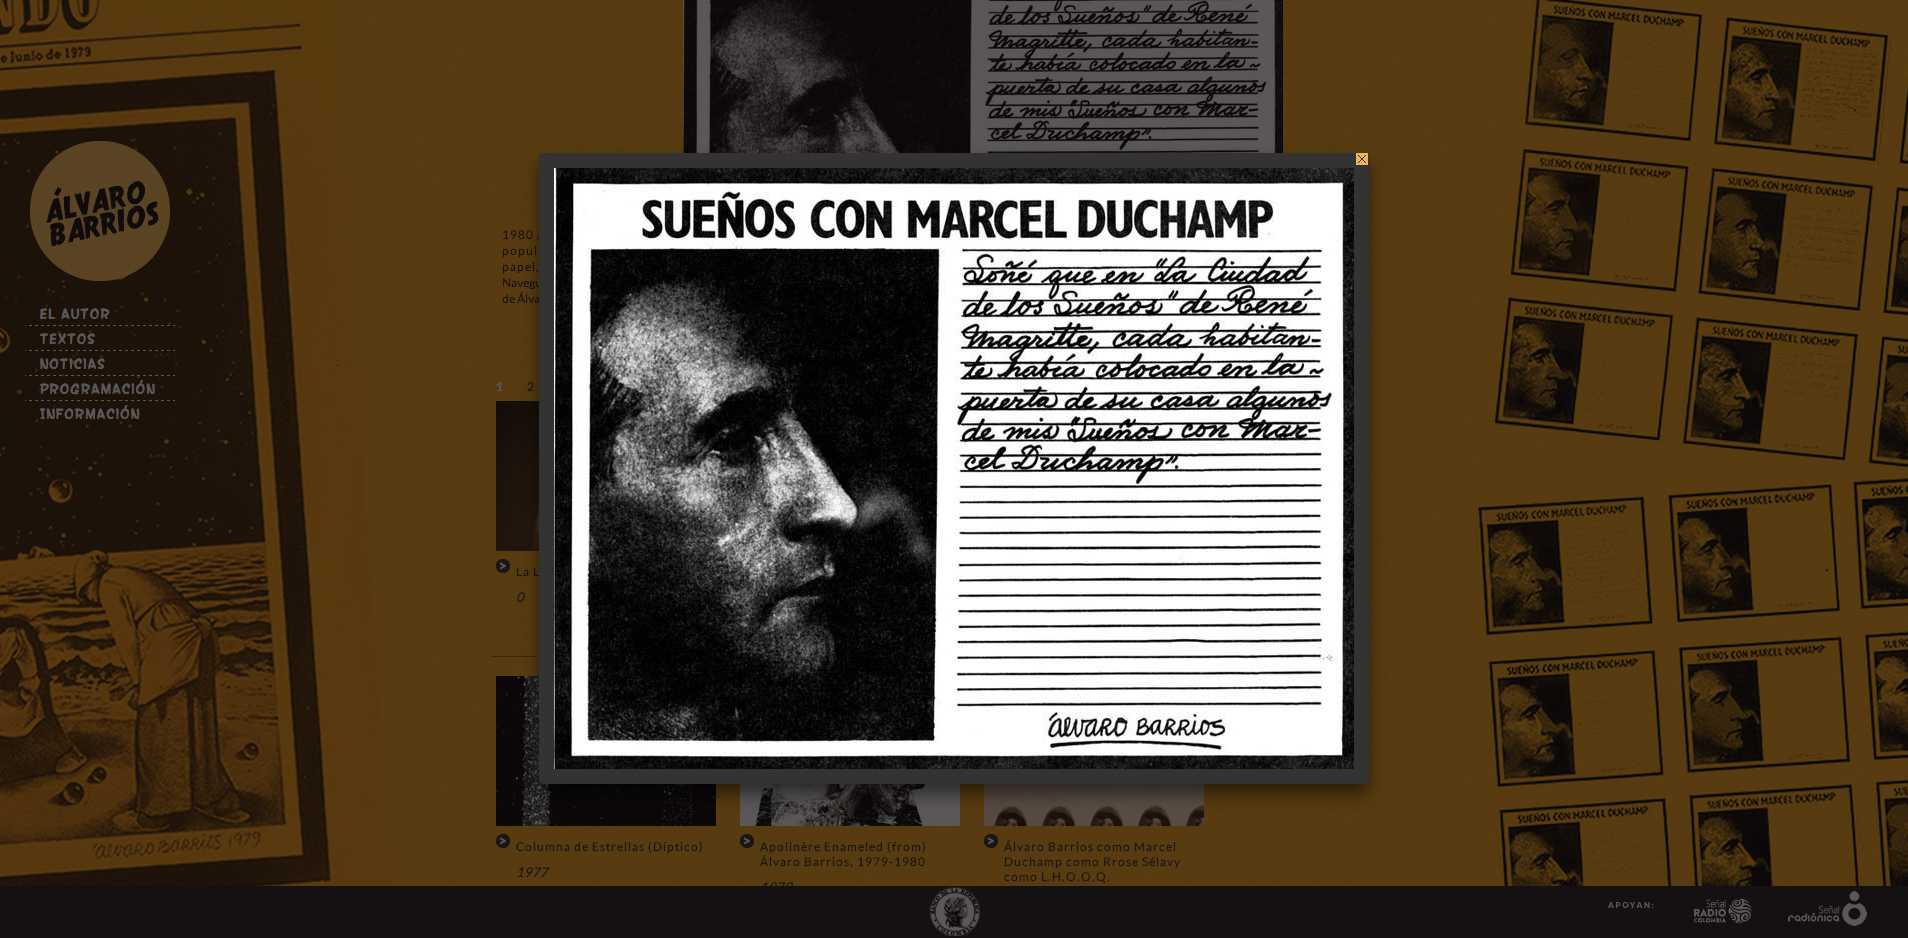 Sala piso 3 - Sueños con Marcel Duchamp